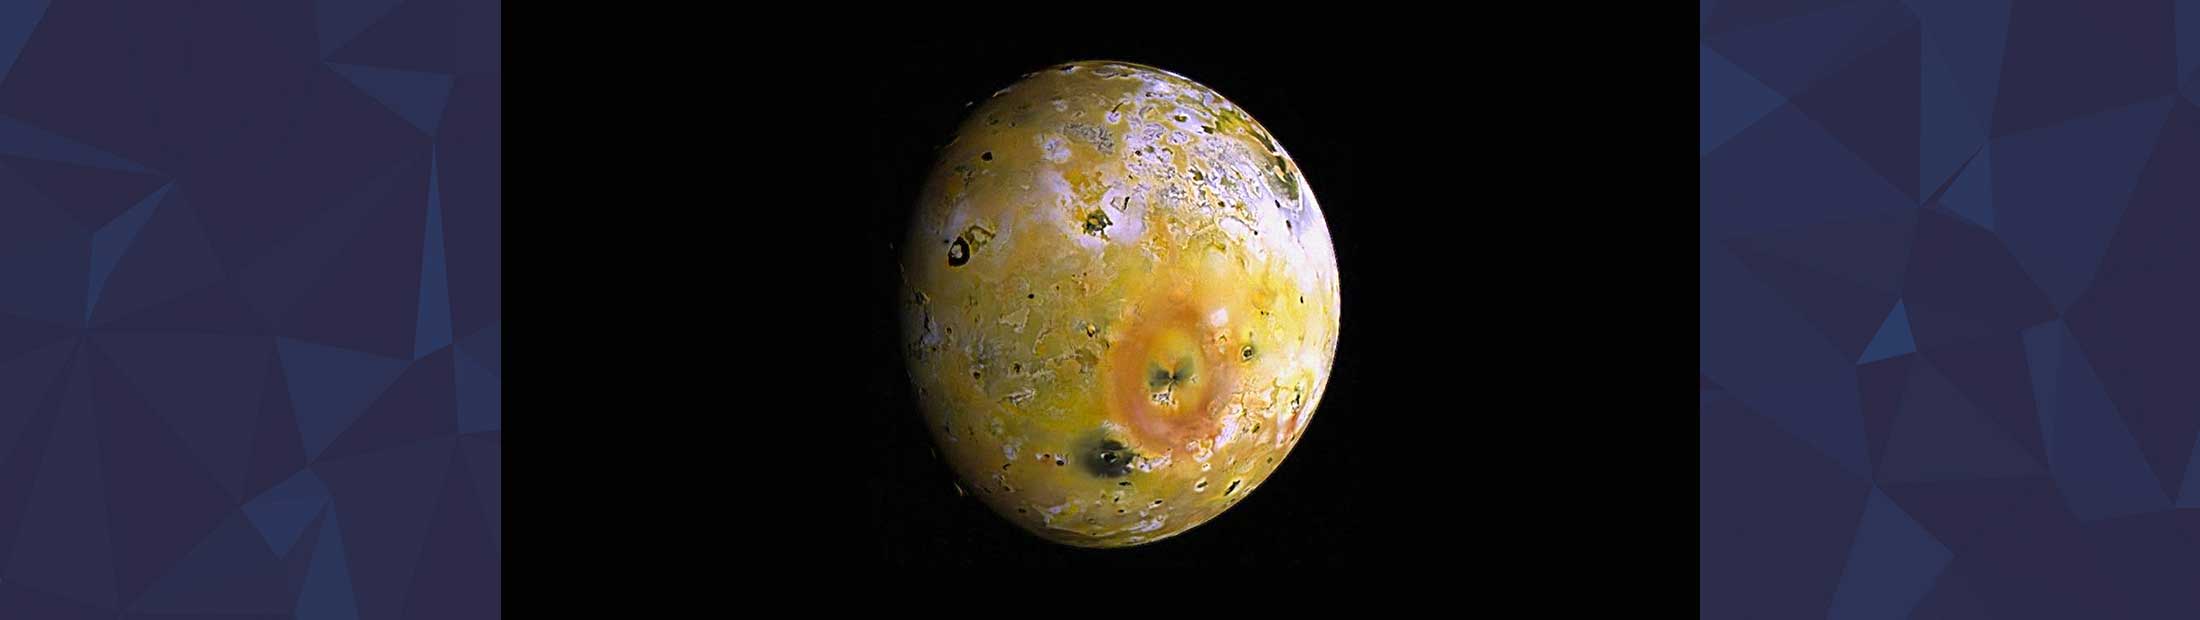 Photo of Jupiter moon Io